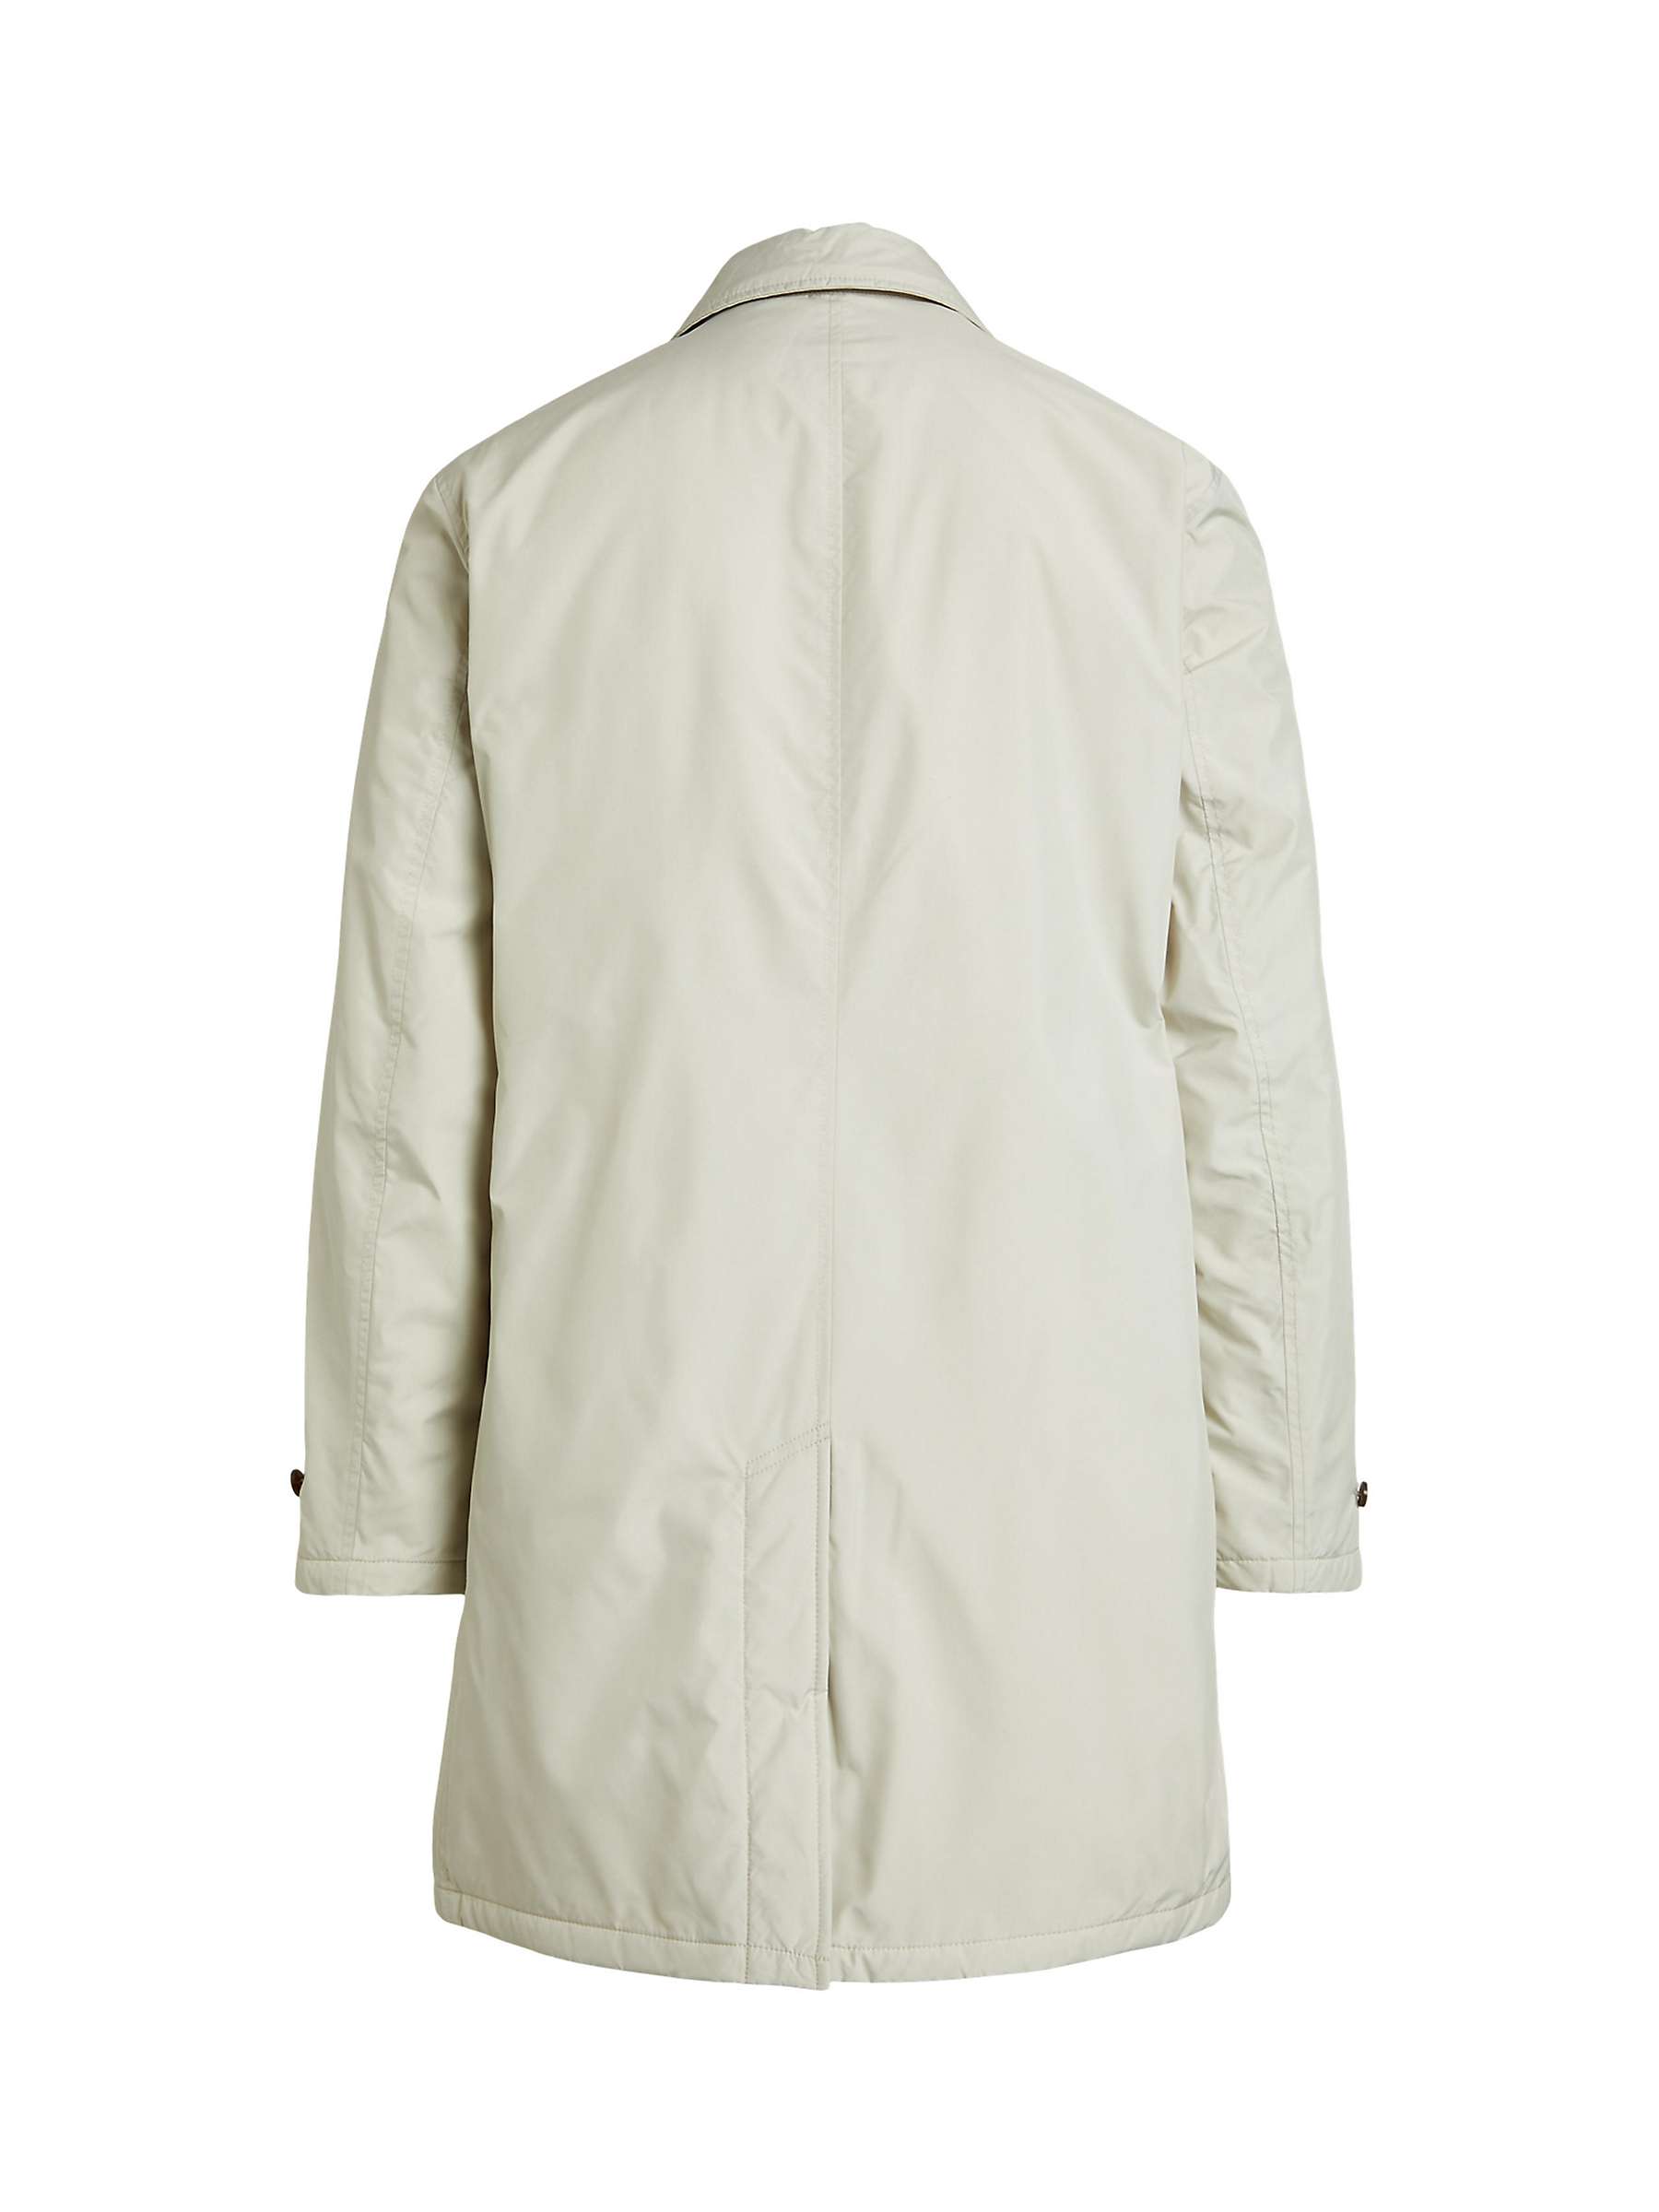 Buy Ralph Lauren Walking Coat, Grey Online at johnlewis.com